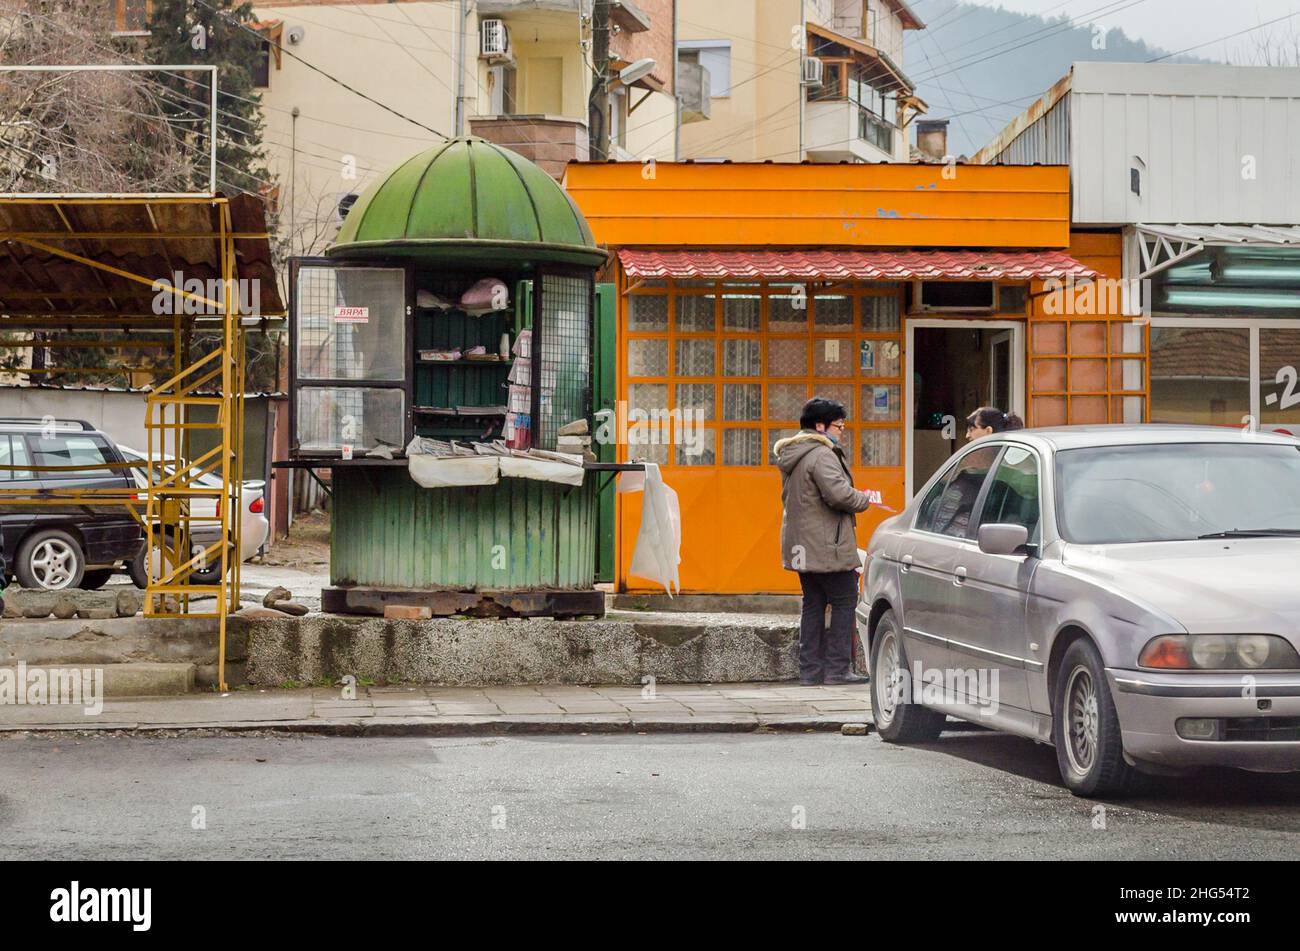 Alltag in Südbulgarien. Alte und alte Geschäfte und zwei Leute, die miteinander reden. Ein Auto ist vor den Geschäften geparkt. Südbulgarische Länder Stockfoto